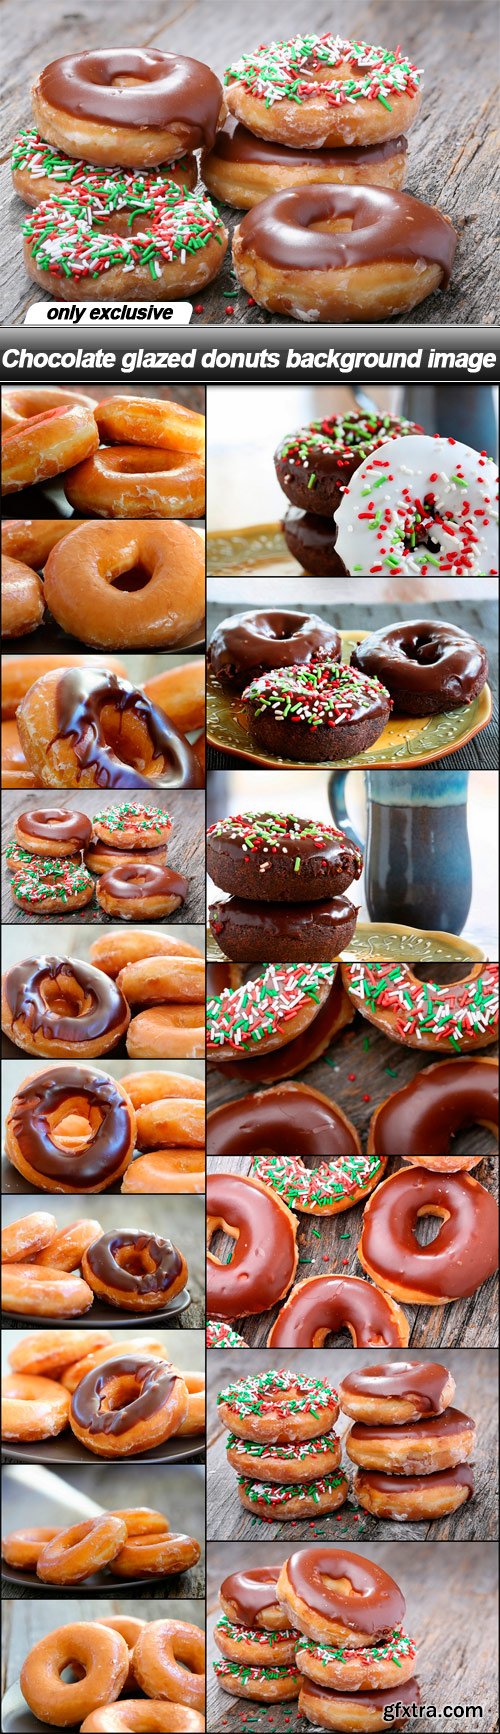 Chocolate glazed donuts background image - 17 UHQ JPEG